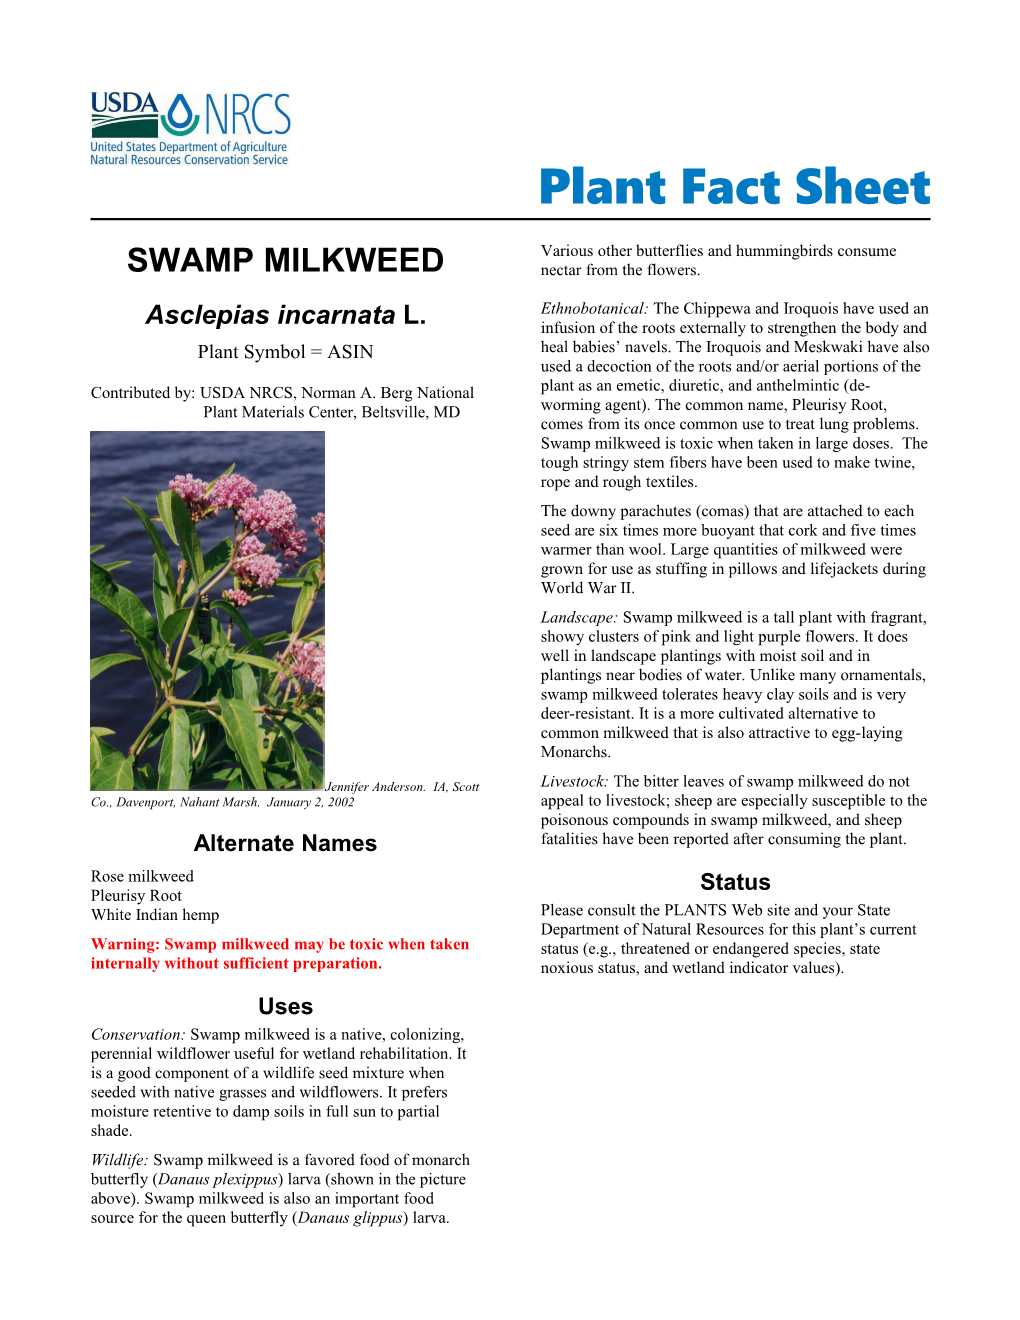 Swamp Milkweed, Asclepias Incarnata, Plant Fact Sheet